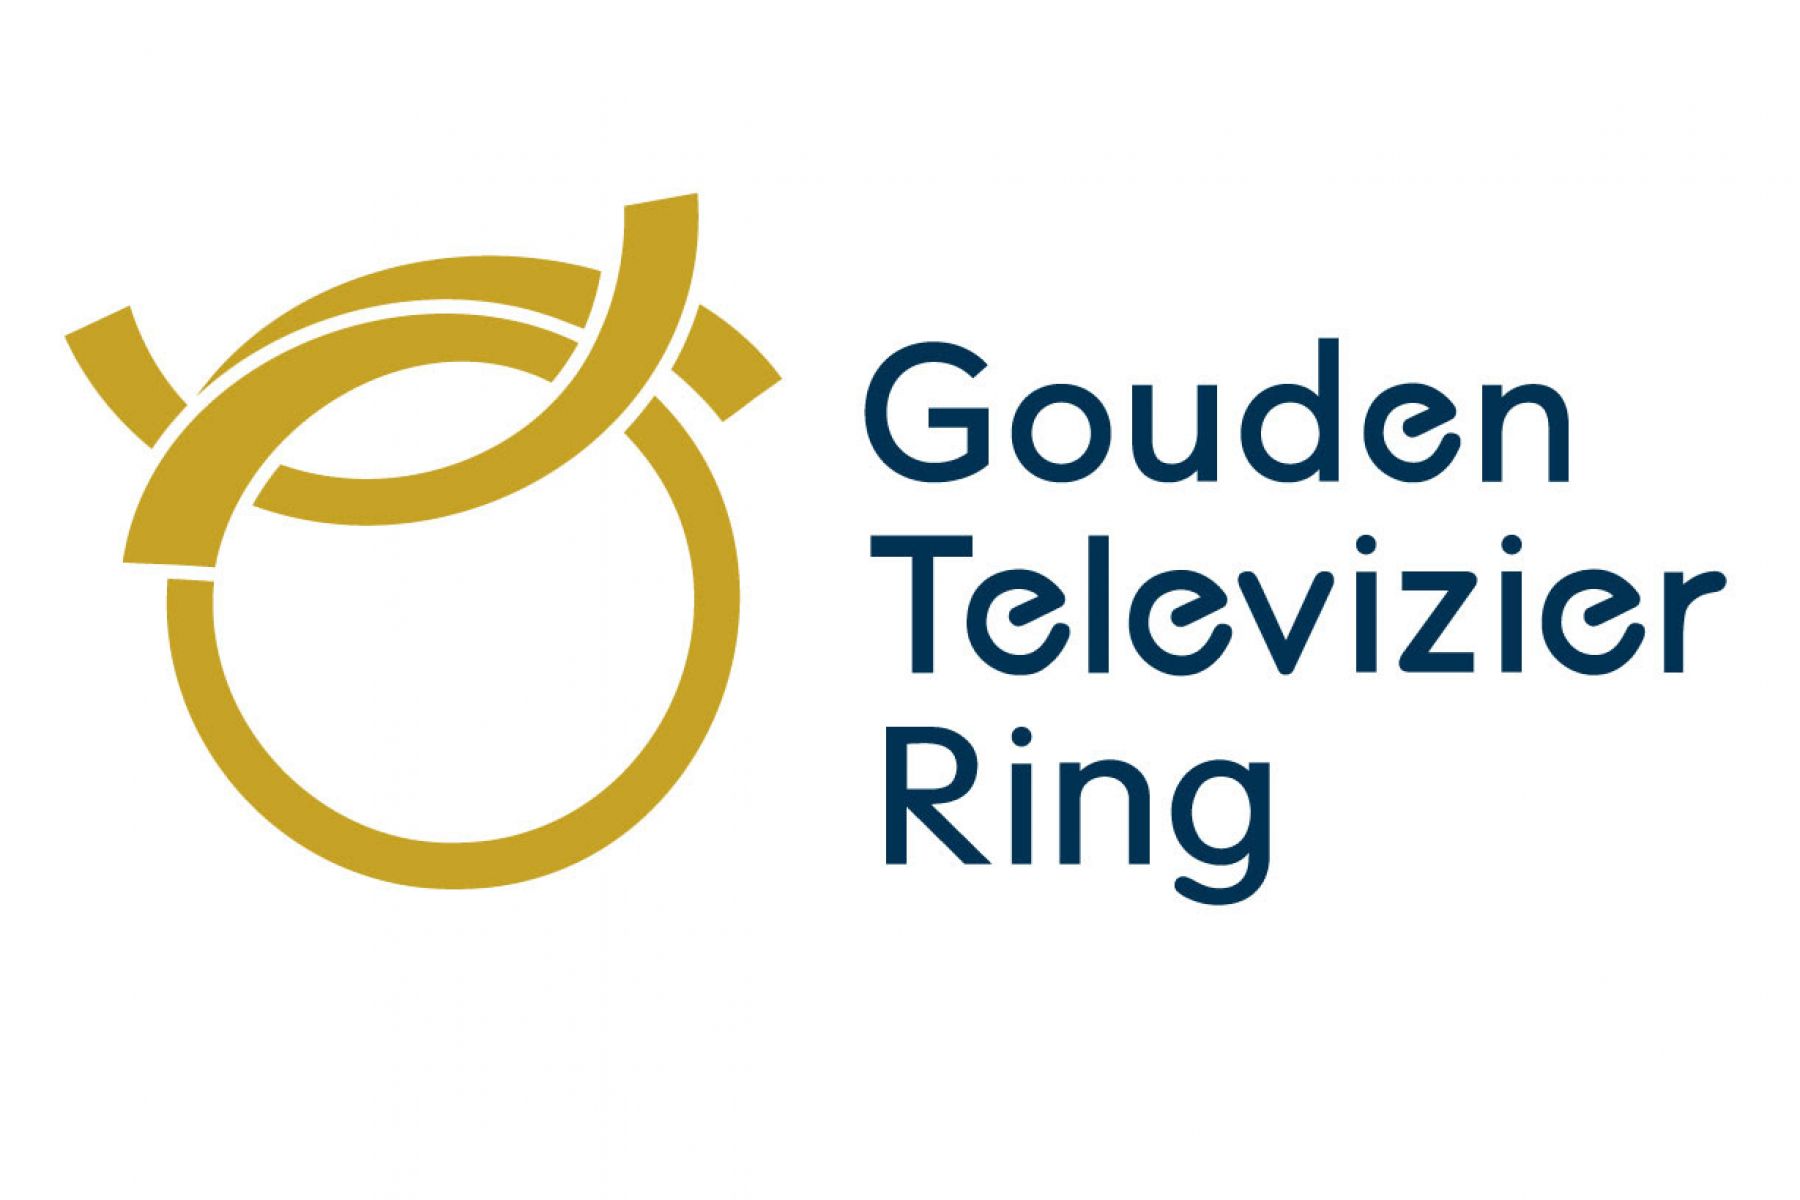 Stemmen Televizier Ring 2021 Start Eerste Kwalificatieronde Gouden Televizier Ring 2021 Tvvisie